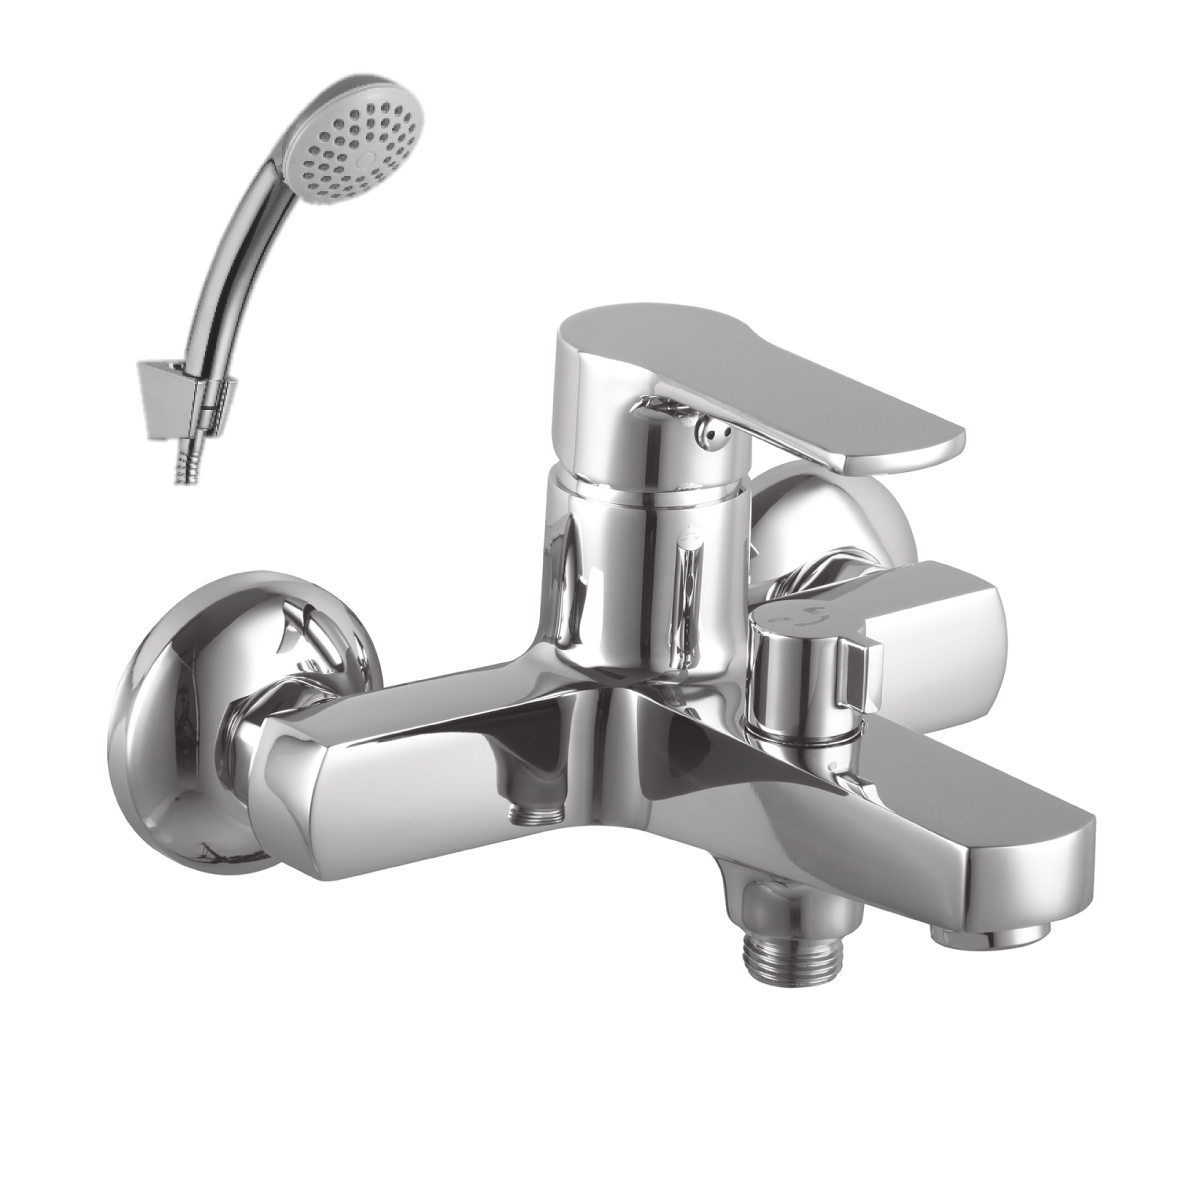 LM1512C Bath faucet